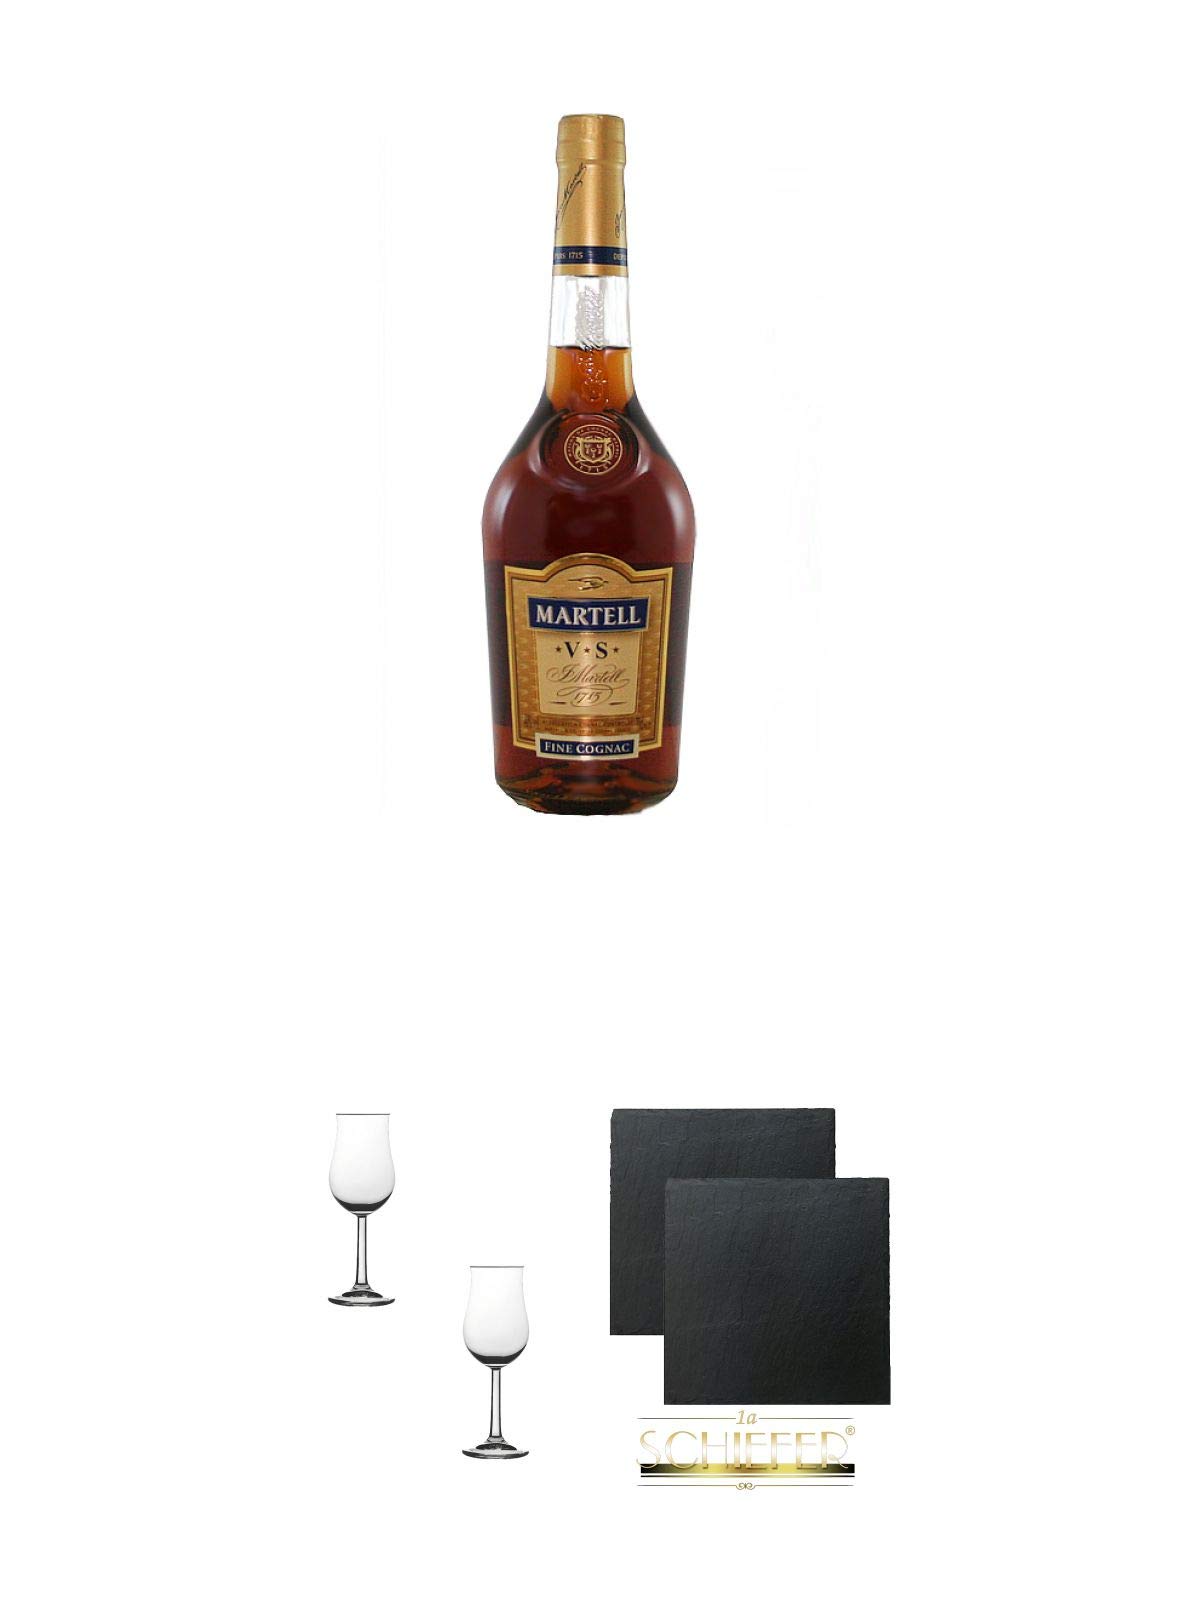 Martell VS Fine de Cognac Frankreich 0,7 Liter + Nosing Gläser Kelchglas Bugatti mit Eichstrich 2cl und 4cl - 2 Stück + Schiefer Glasuntersetzer eckig ca. 9,5 cm Ø 2 Stück